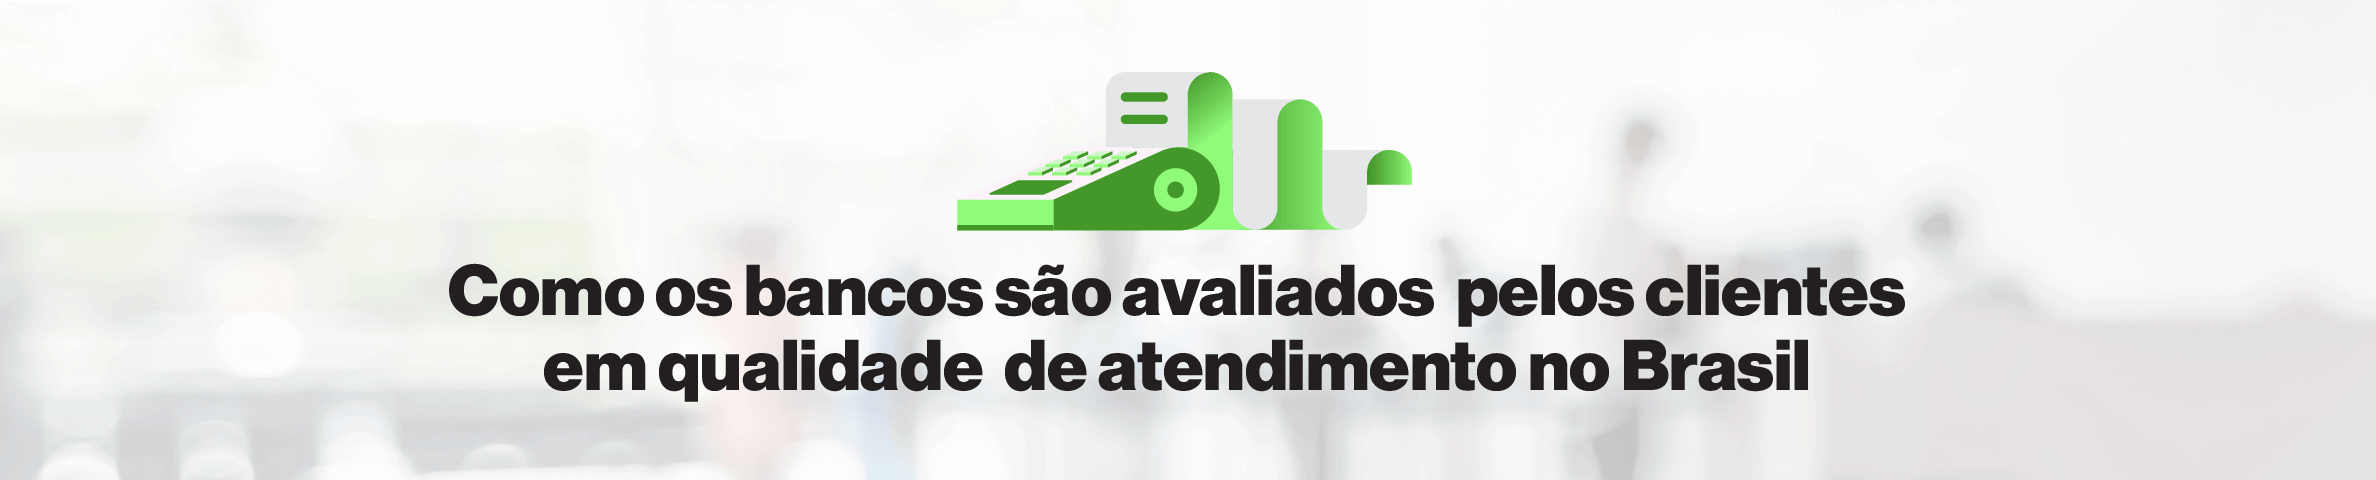 Como os bancos são avaliados pelos clientes em qualidade de atendimento no Brasil